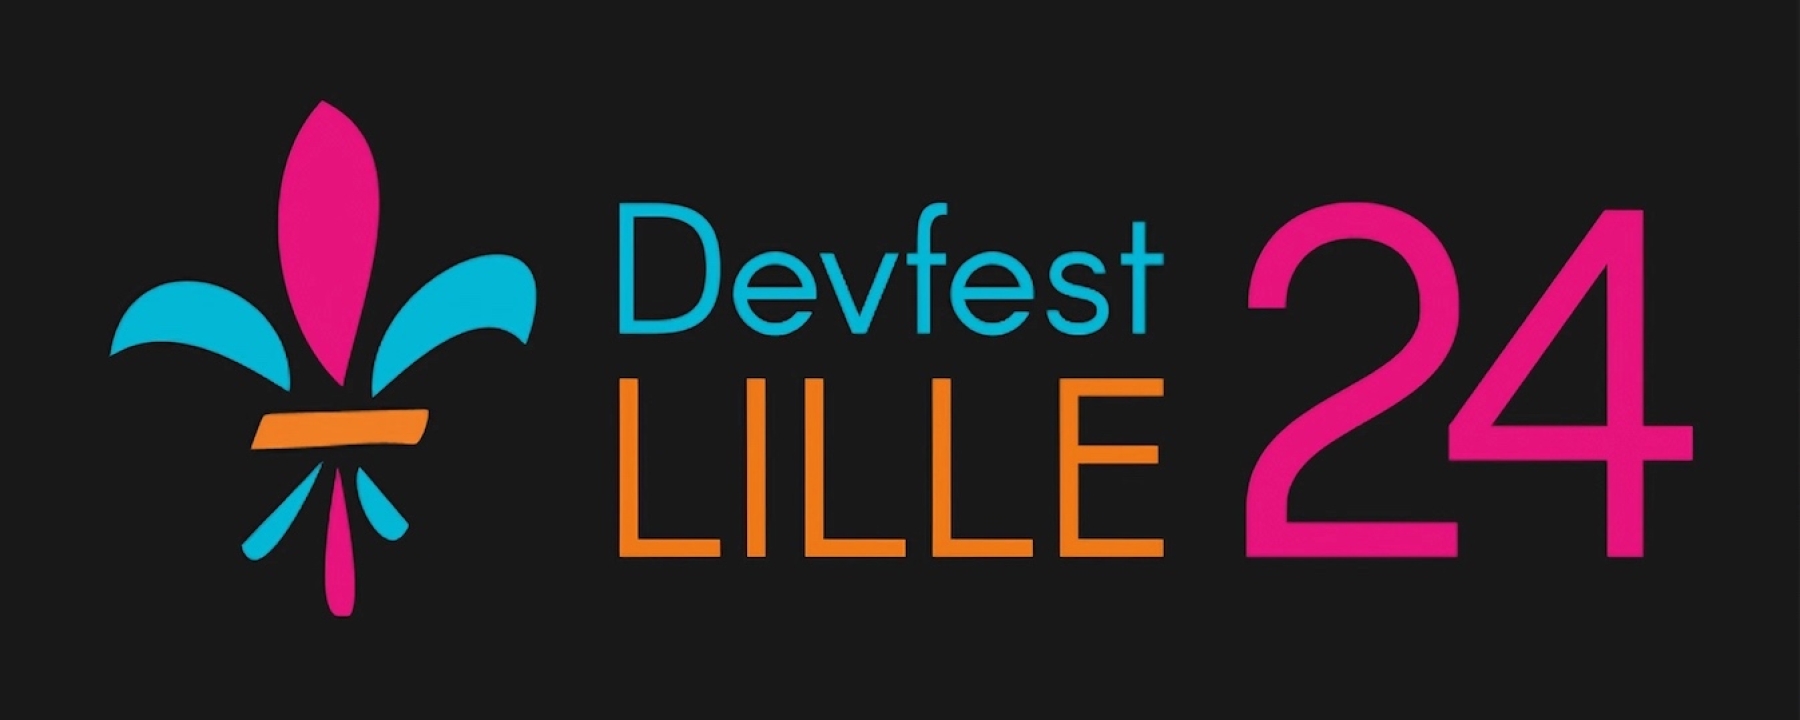 Devfest Lille 2024